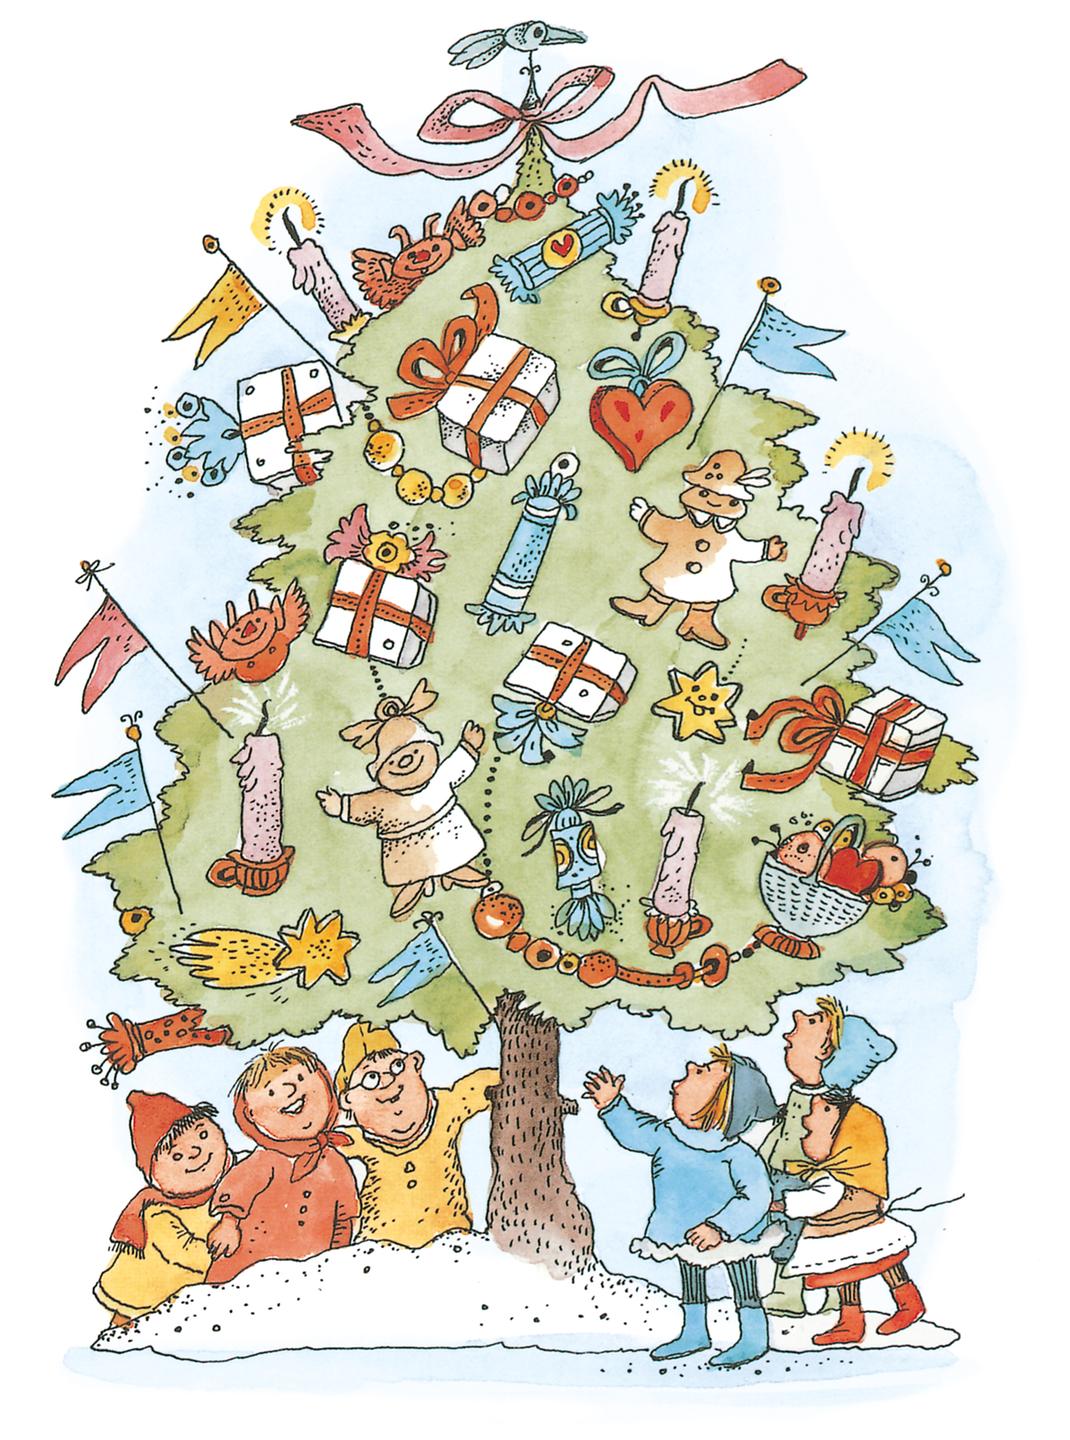 Illustration von zwei Erwachsenen und vier Kinder, die vor einem üppig geschmückten Weihnachtsbaum im Schnee stehen und staunen